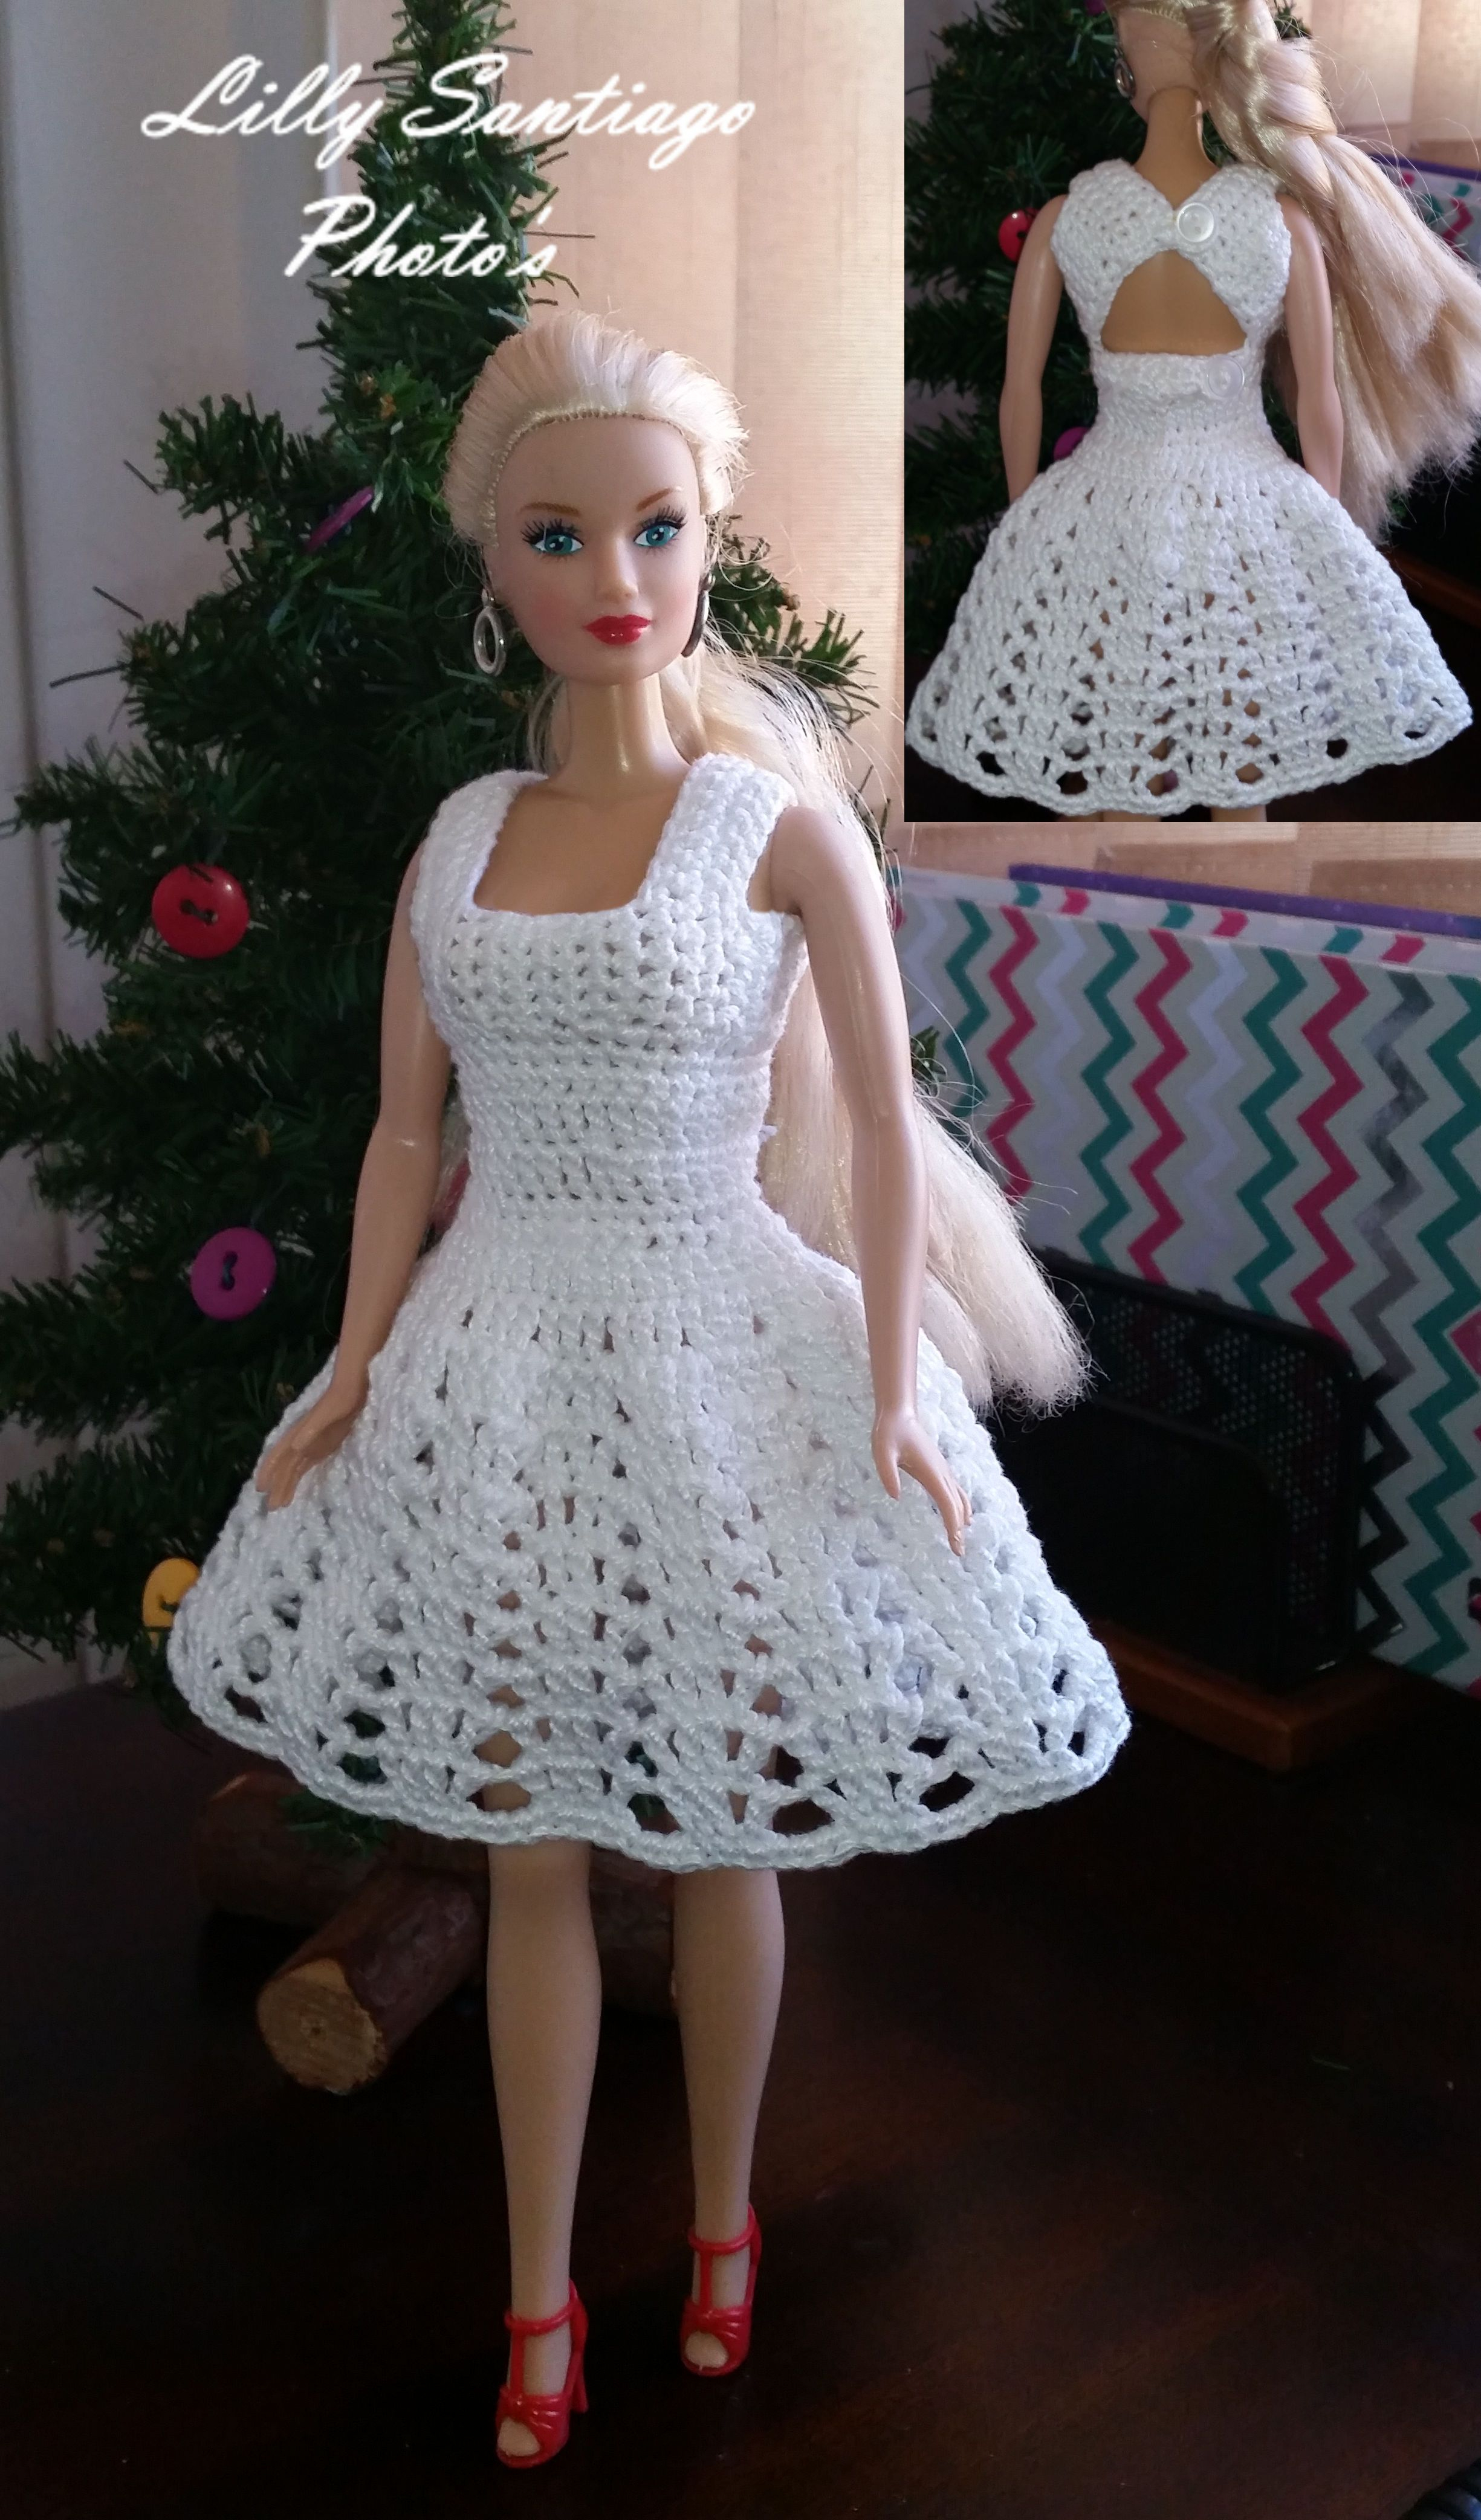 Crochet Doll Dress Patterns For Barbies Crochet Dress Made Lilly Santiago Barbie Crochet Inspiration